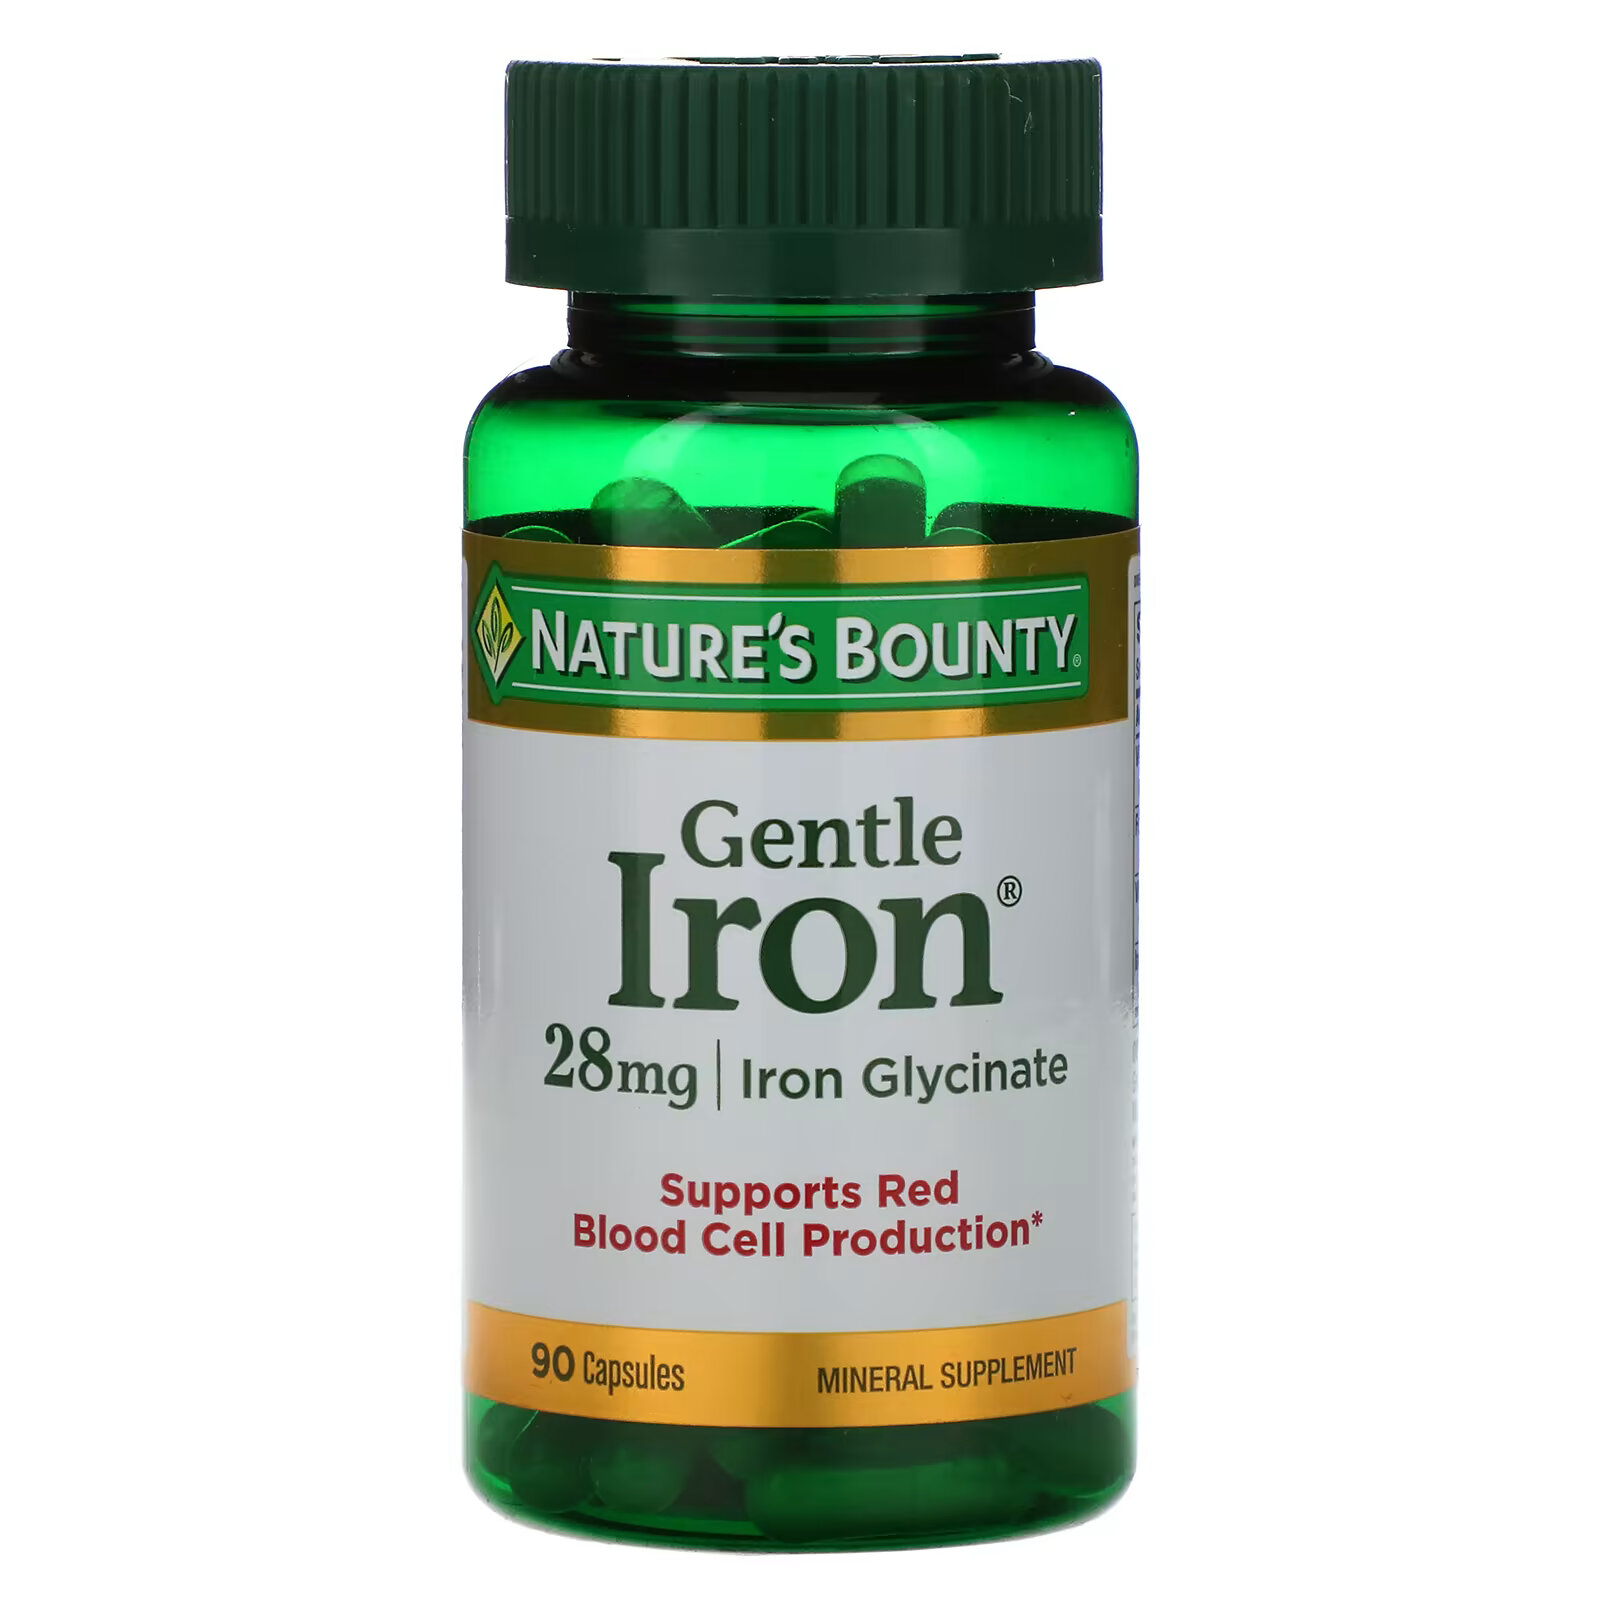 легкодоступное железо nature’s bounty gentle iron 28 мг в капсулах 90 шт Nature's Bounty, Gentle Iron, железо, 28 мг, 90 капсул